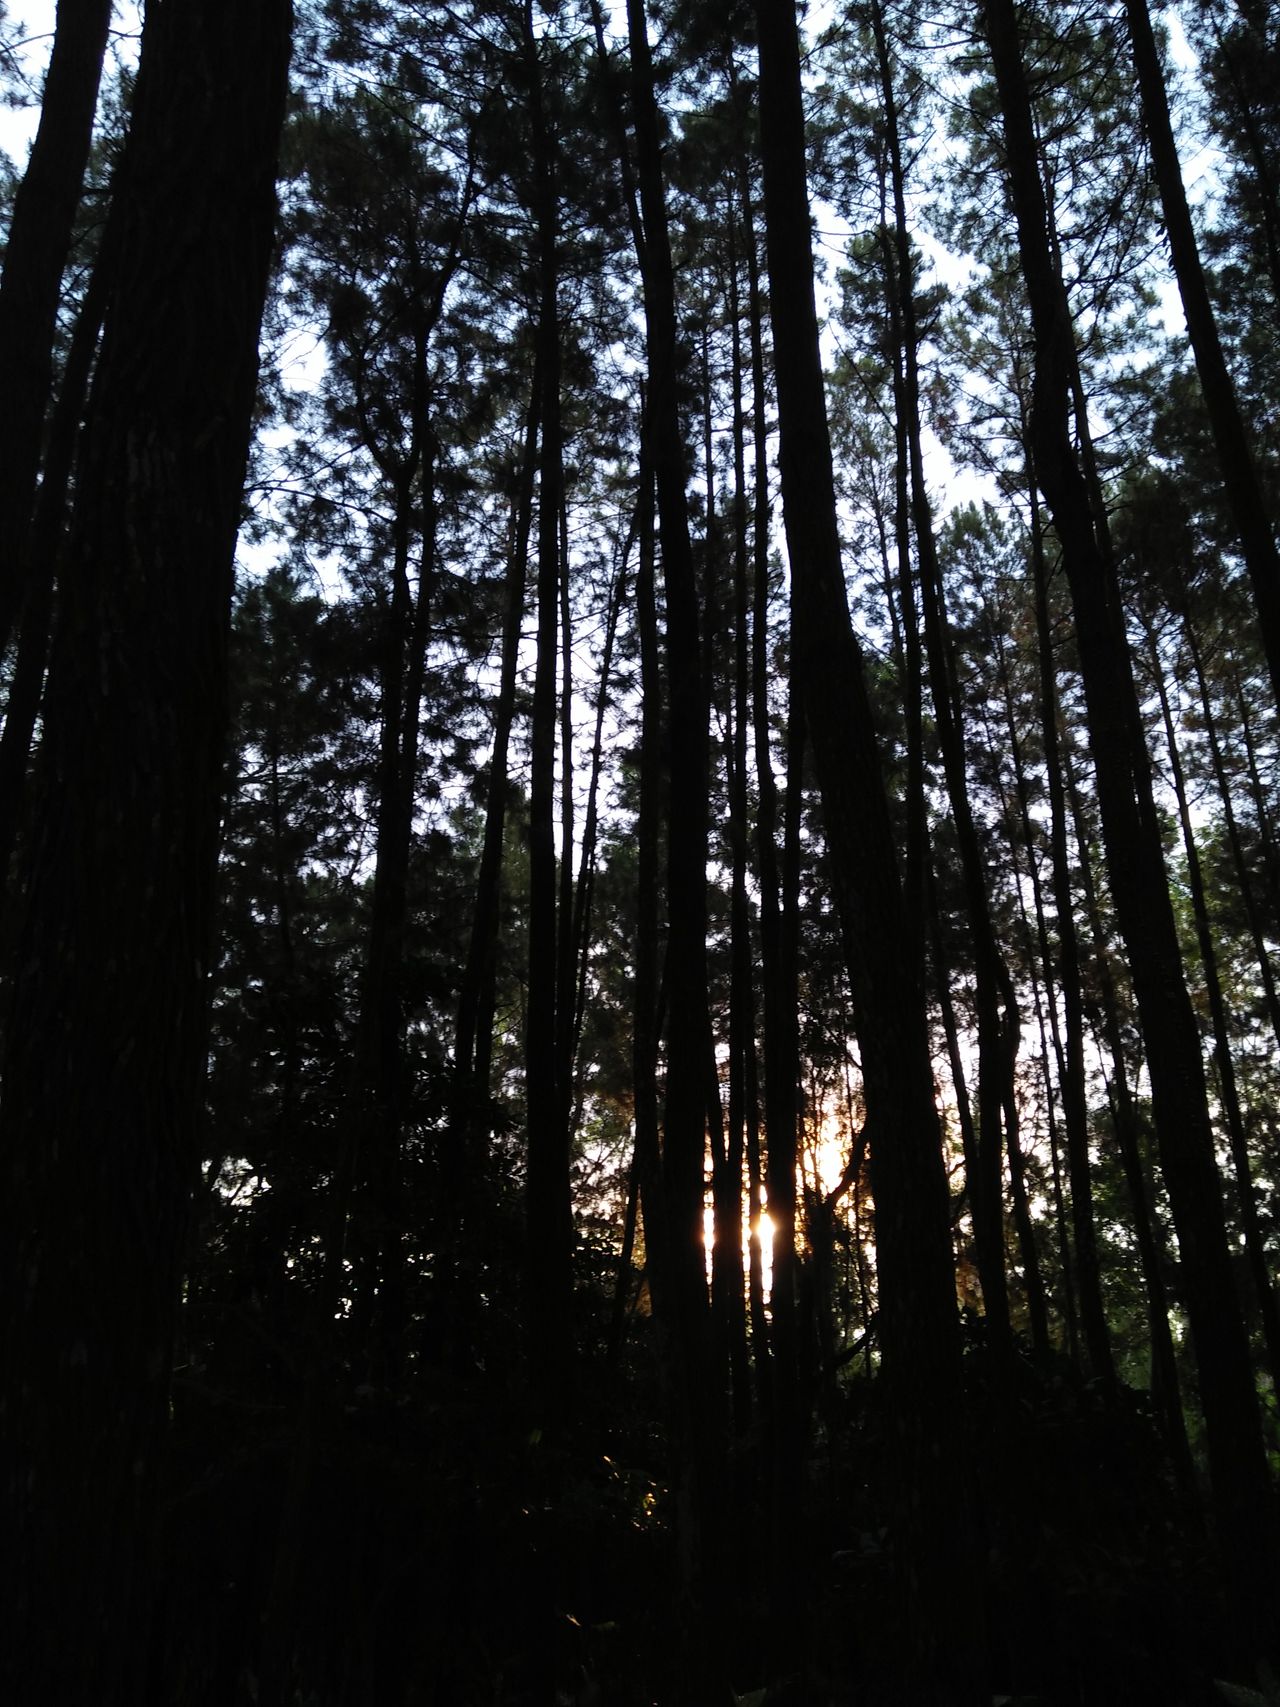 Hutan Pinus Imogiri